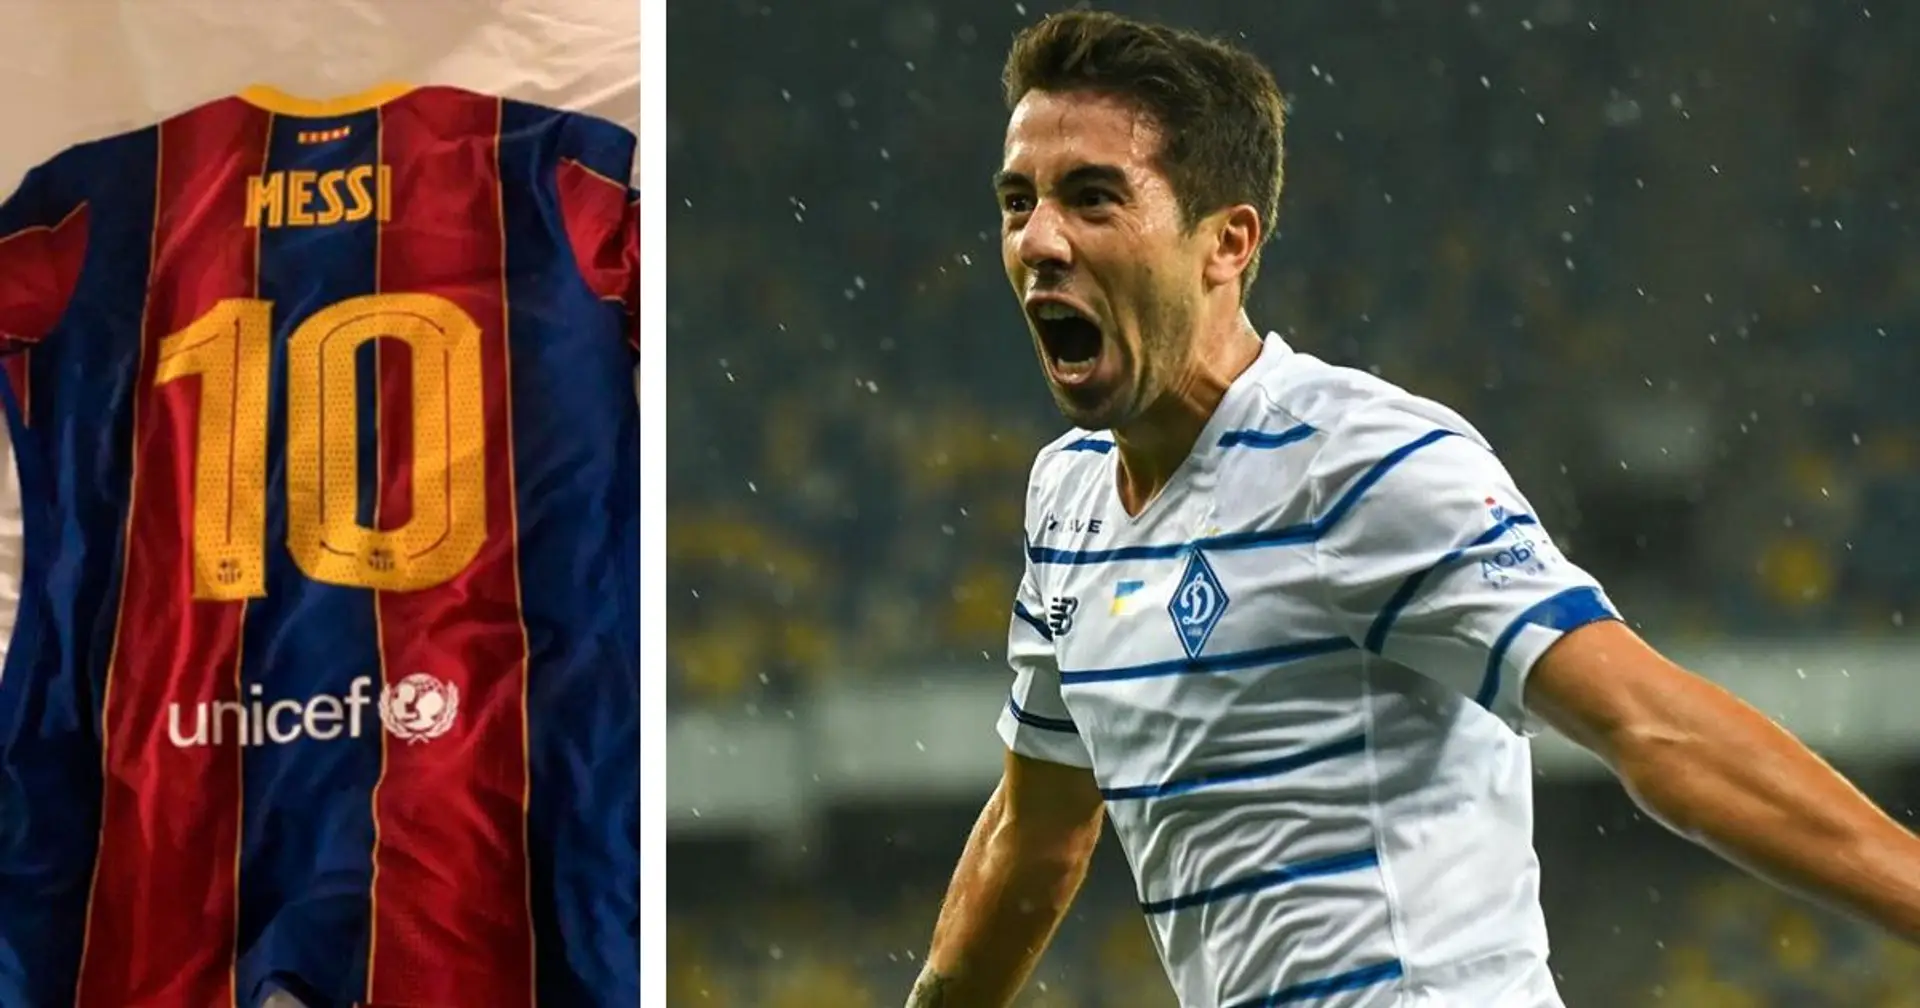 Un joueur du Dynamo a négocié avec Suárez pour échanger un maillot avec Messi